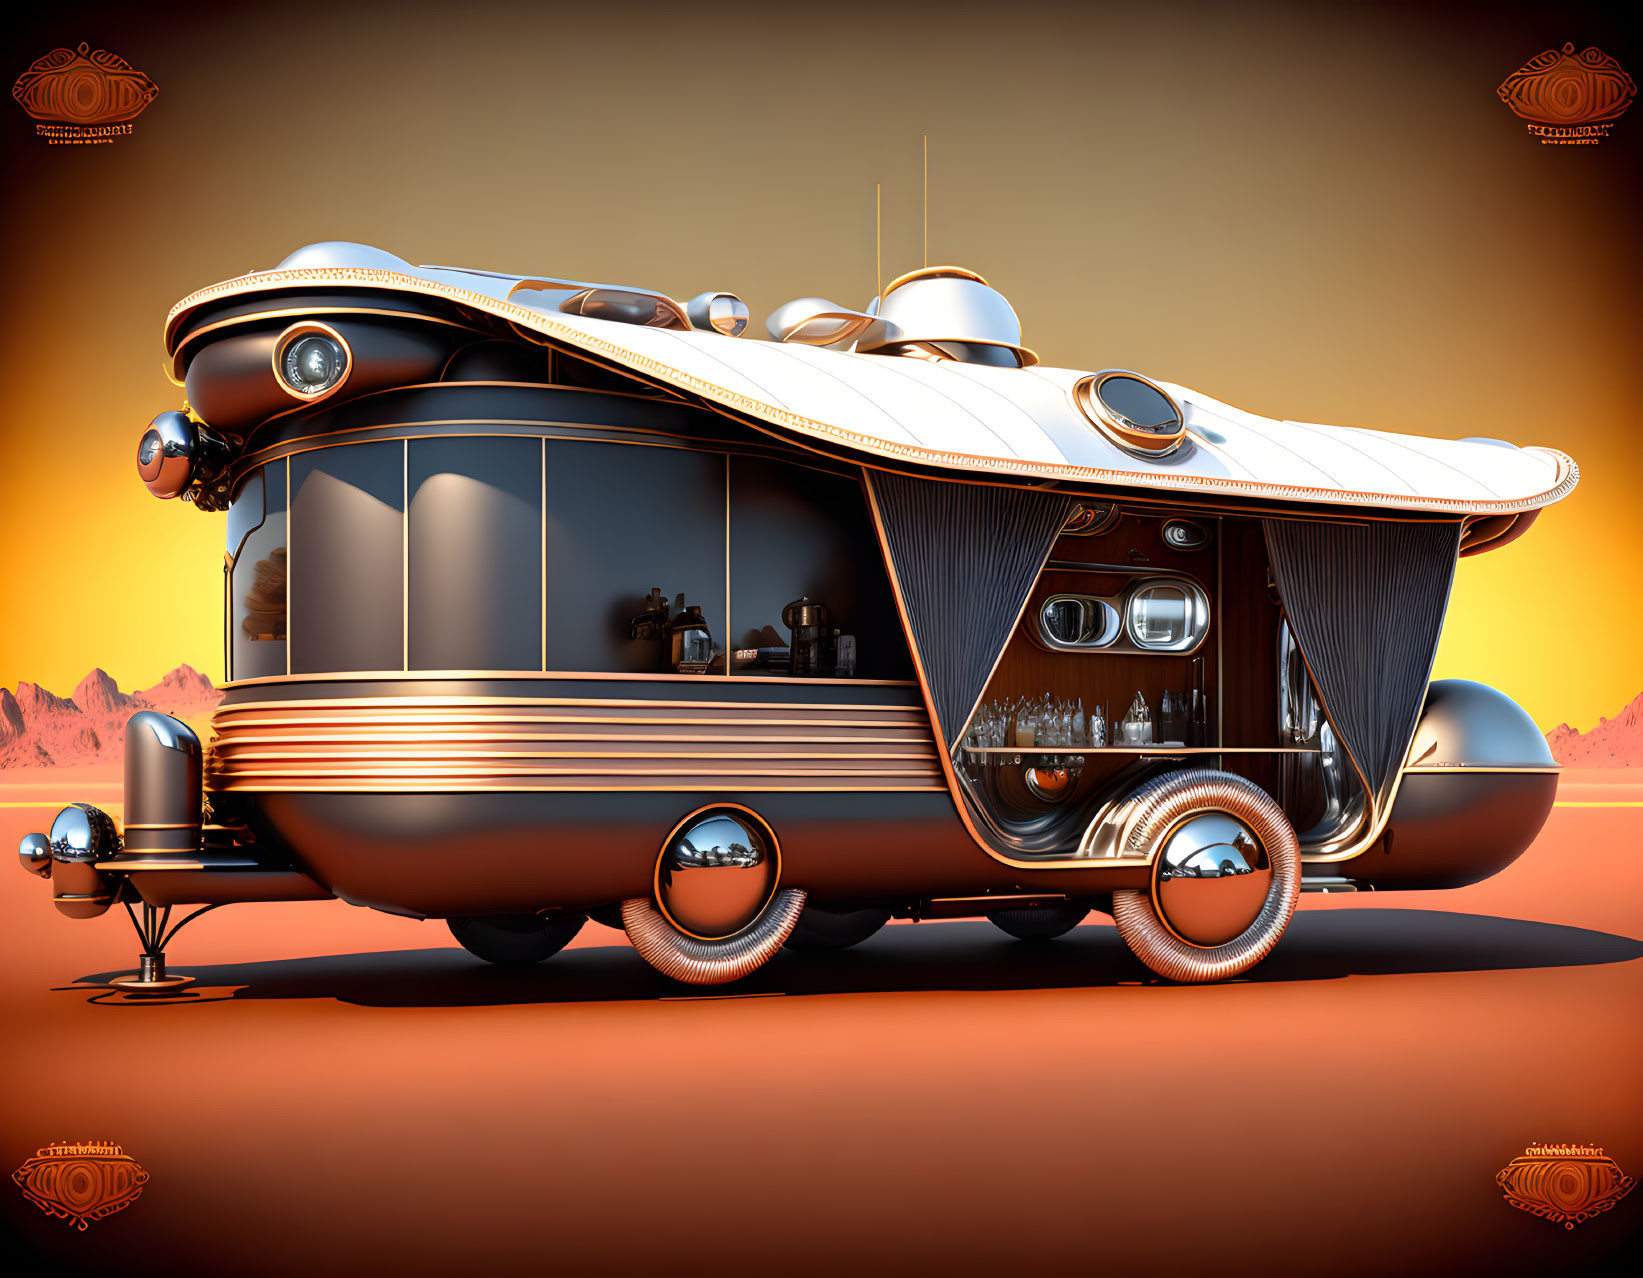 Dieselpunk elegant mobile home